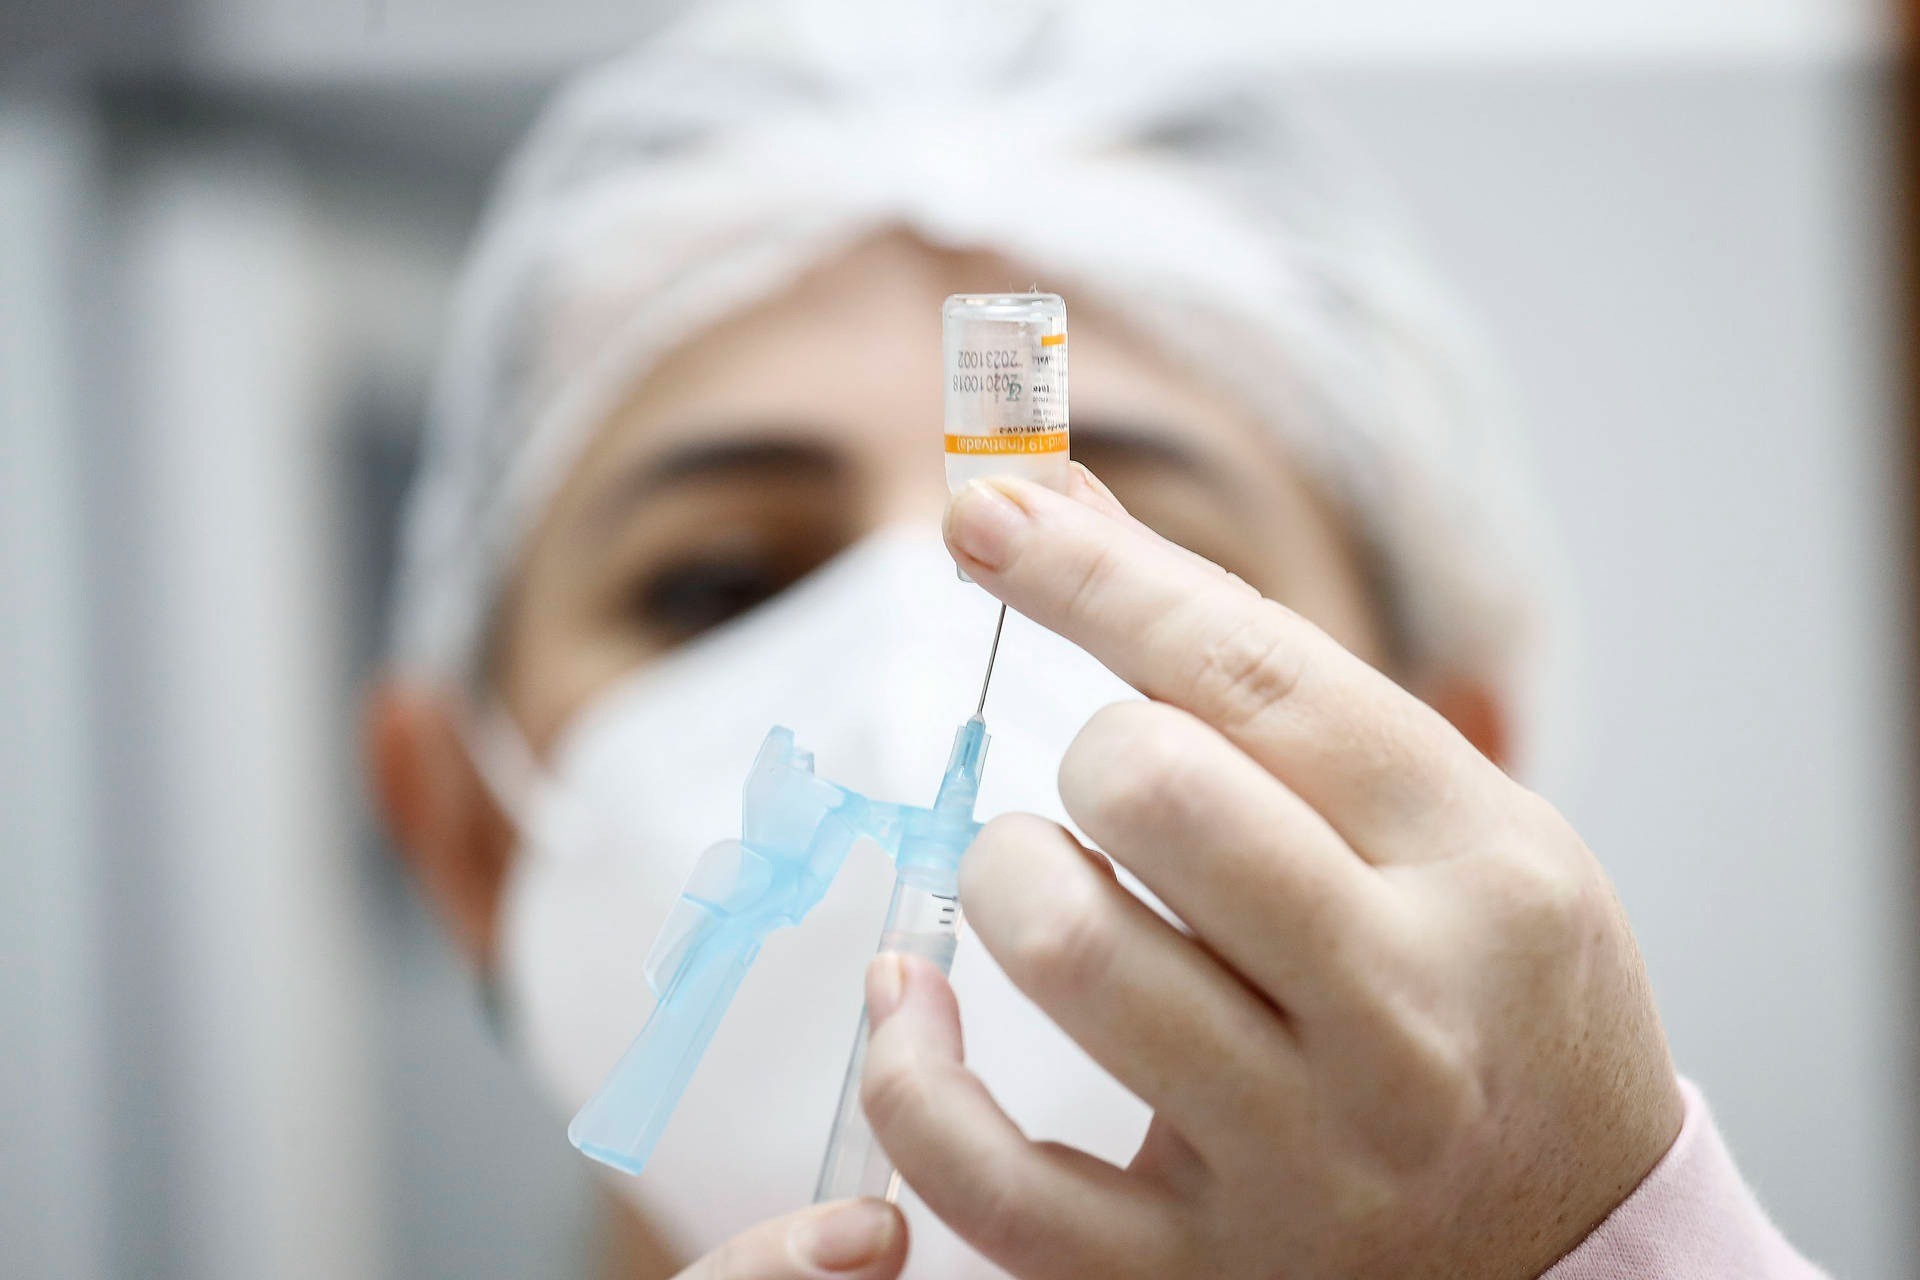 Nova remessa de vacinas contra a Covid-19 recebidas por Missal contém 216 doses